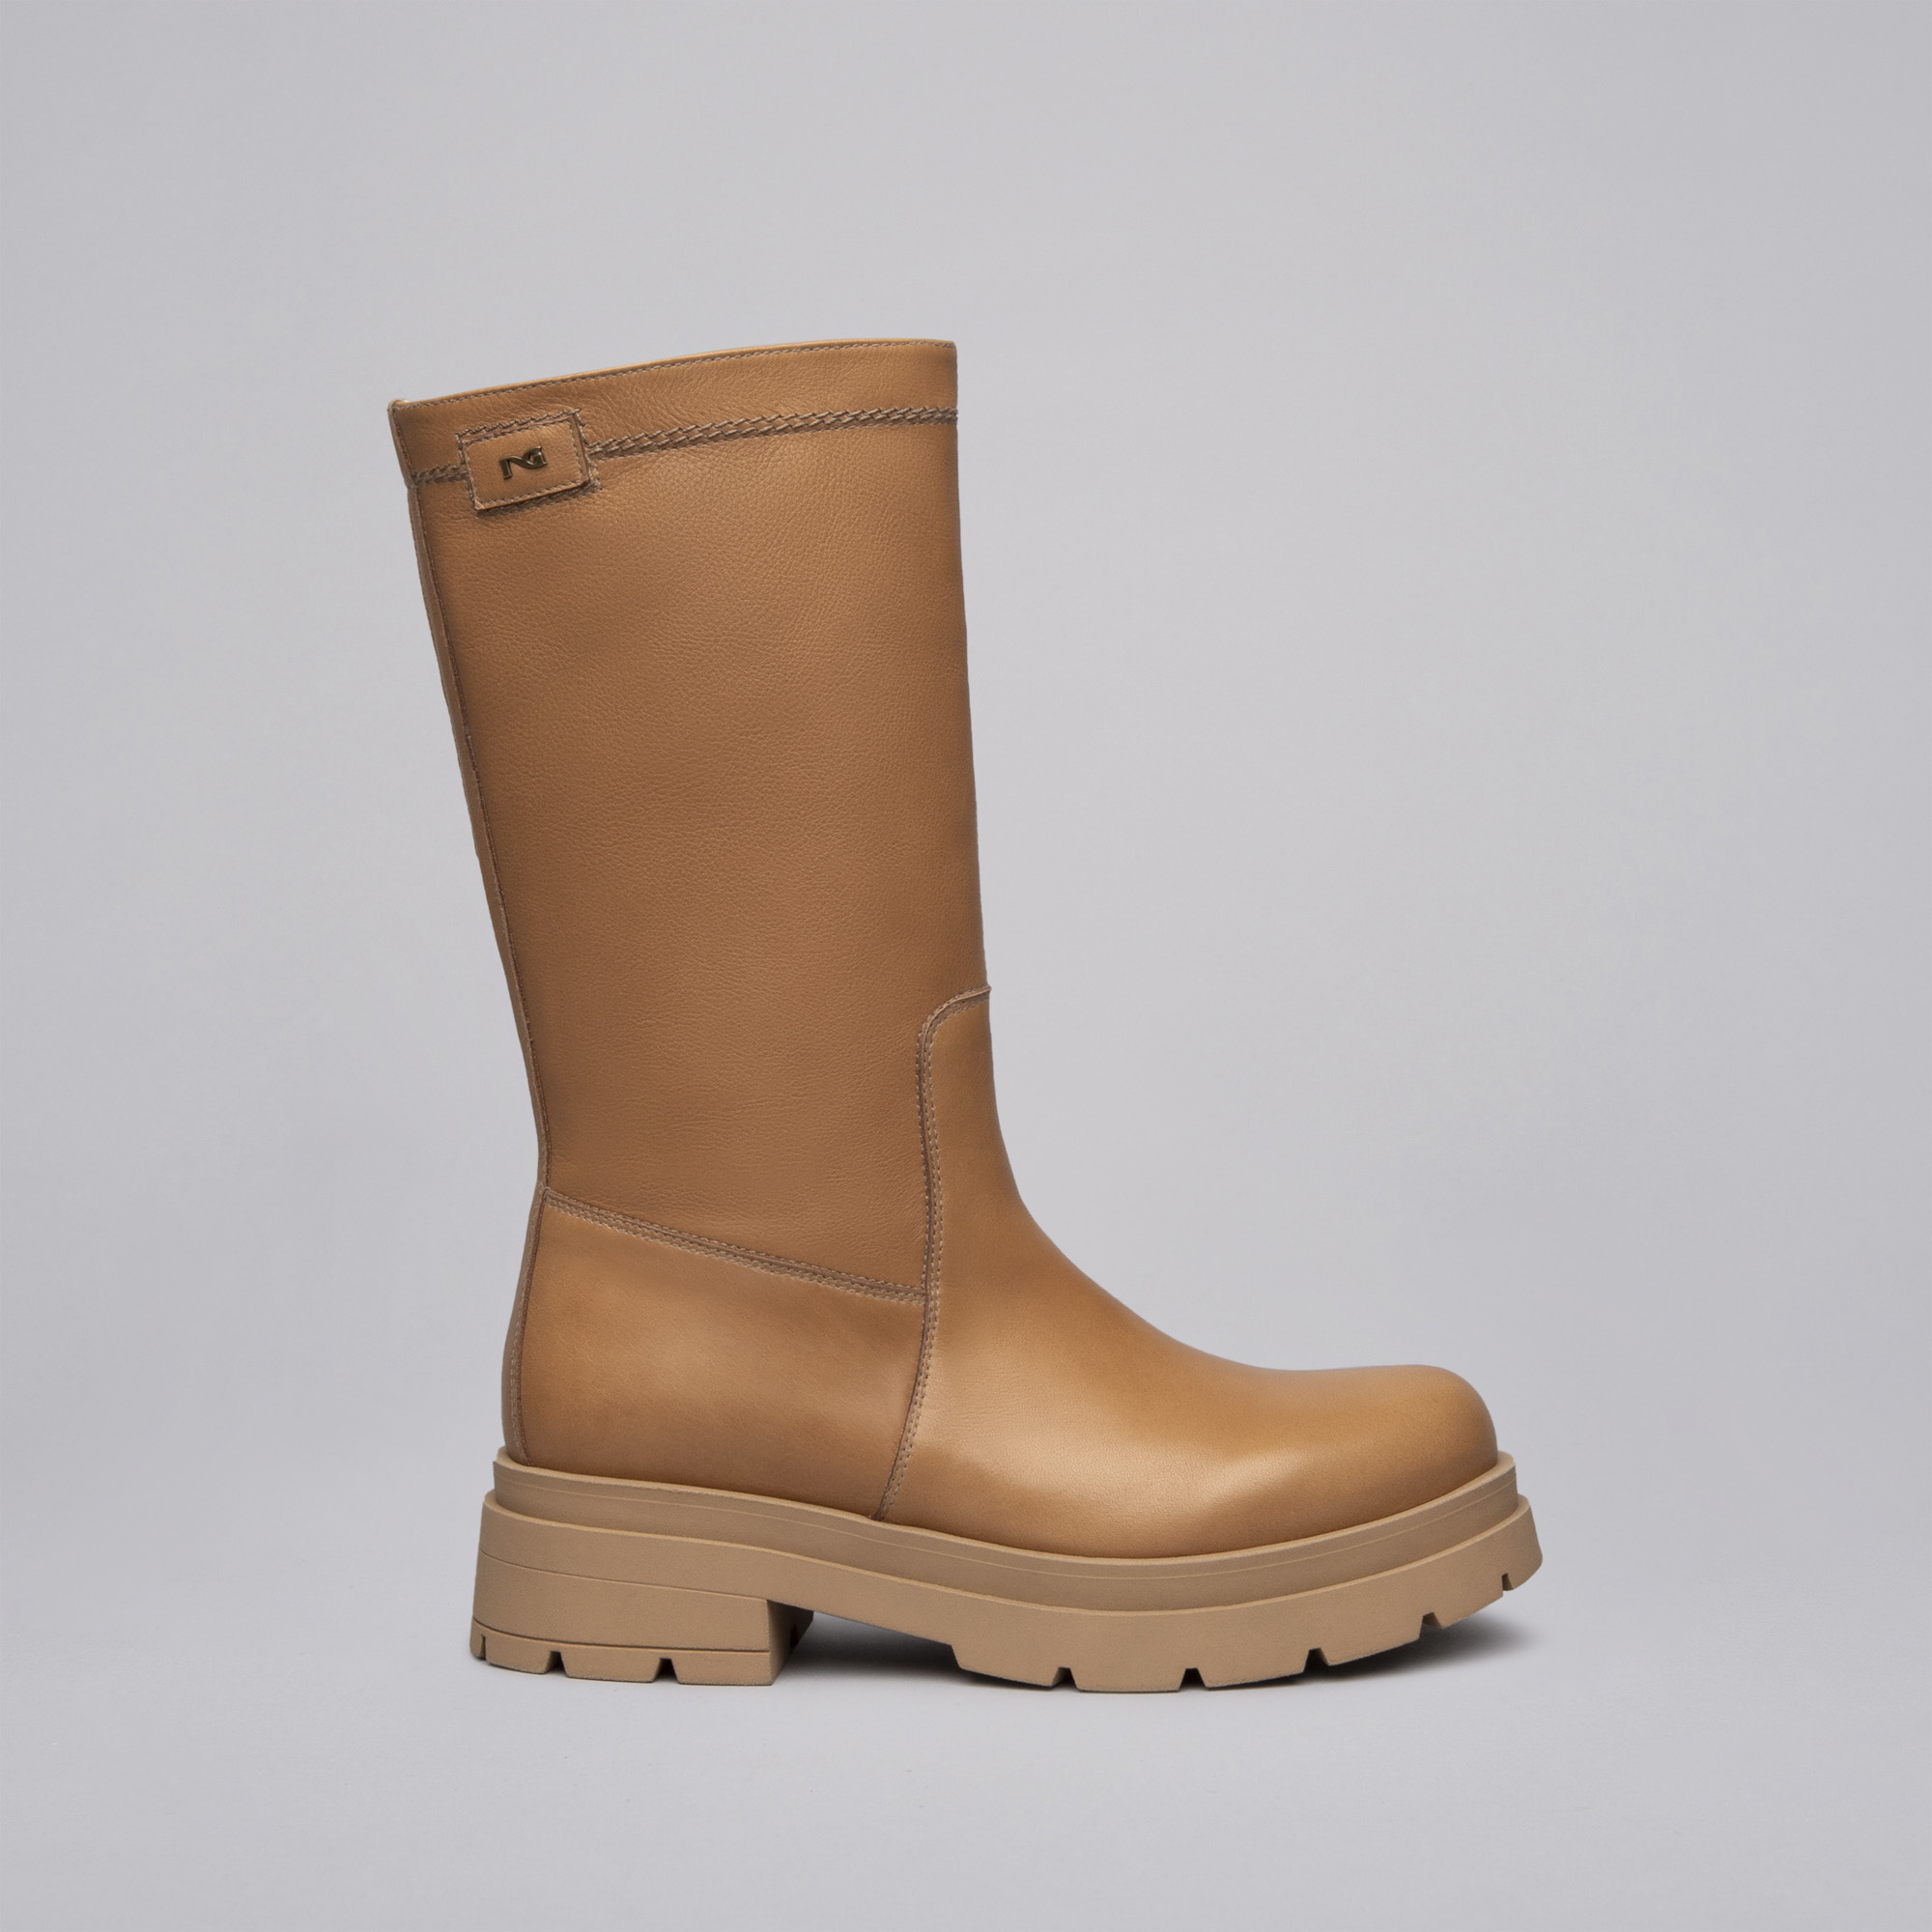 Nero Giardini donna combat boots in pelle I114320D colore malto made in italy 